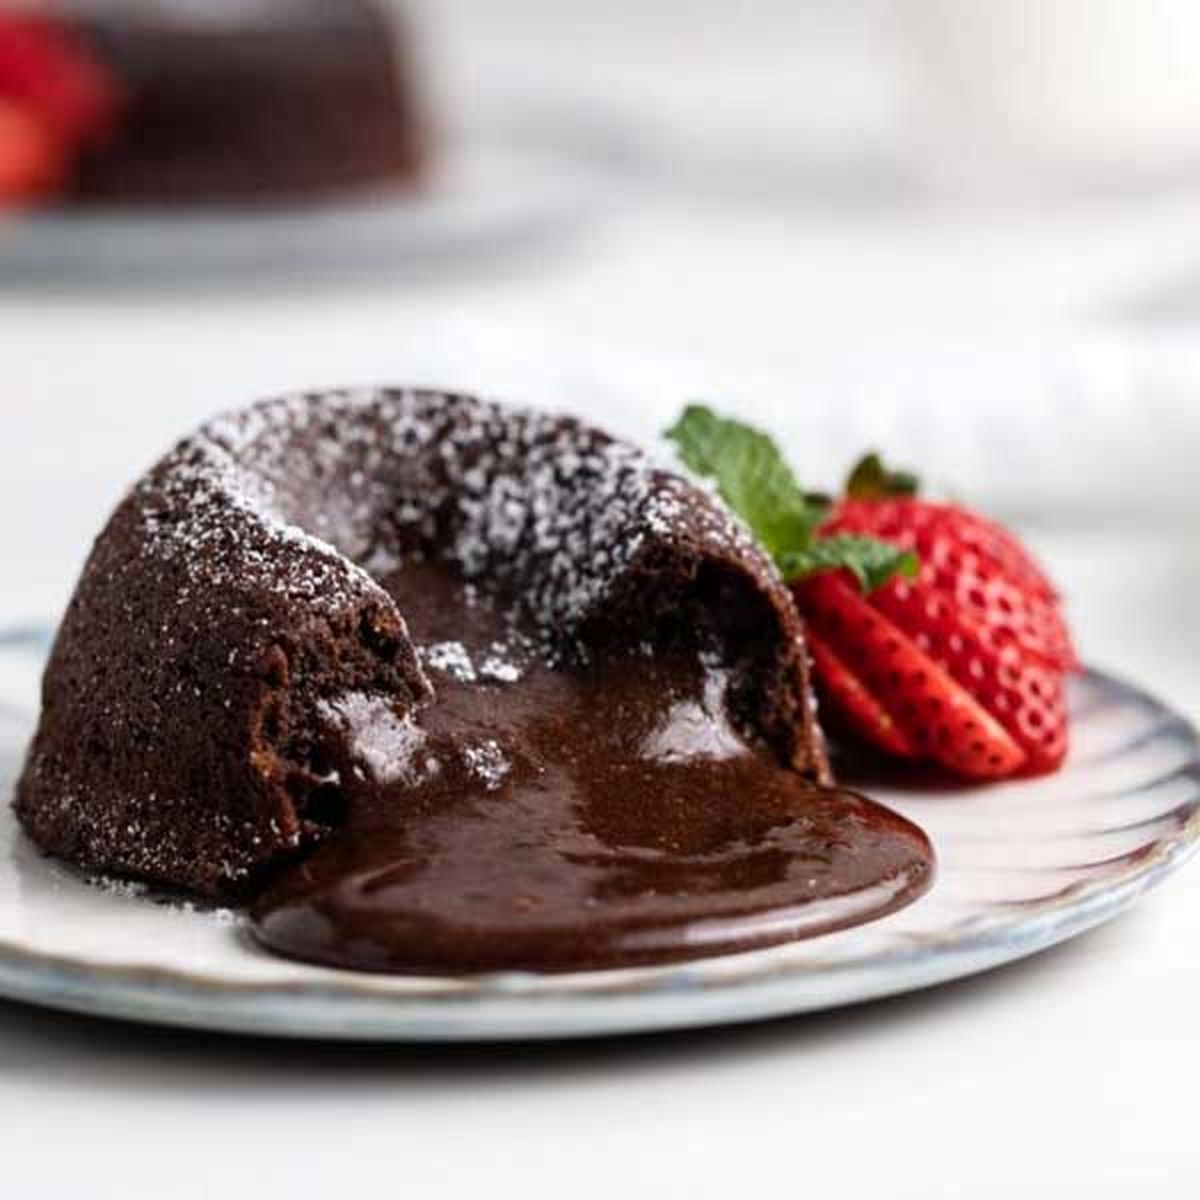 روش پخت کیک گدازه شکلاتی فقط در ۷ دقیقه
